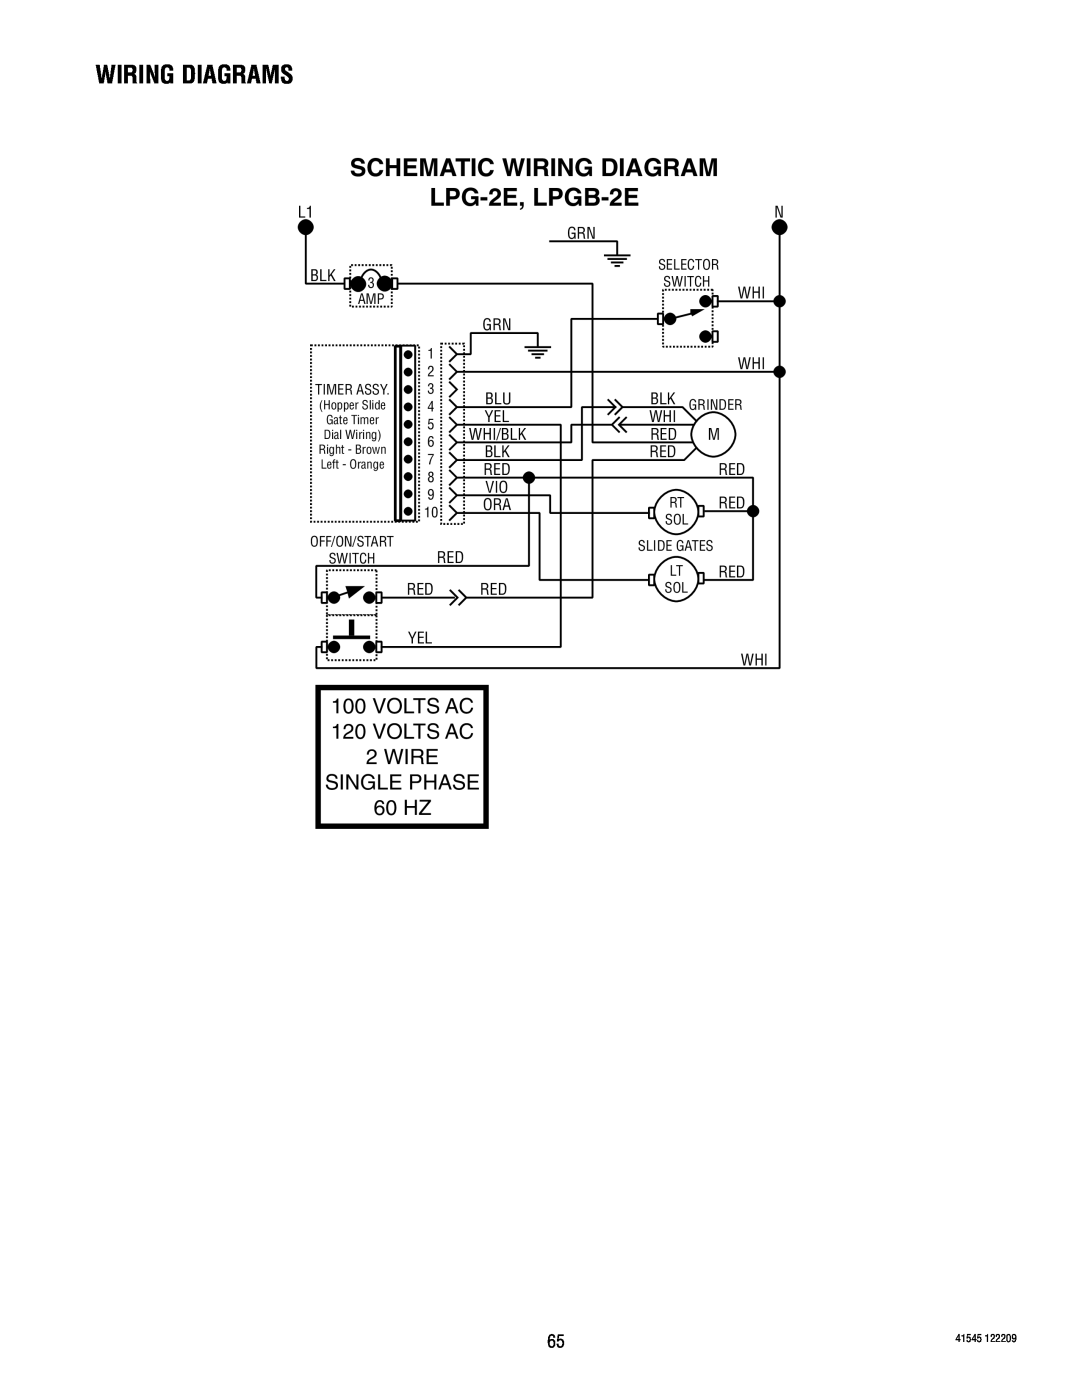 Bunn G9WD, FPG Schematic Wiring Diagram, LPG-2E, LPGB-2E, Wiring Diagrams, VOLTS AC 120 VOLTS AC 2 WIRE SINGLE PHASE 60 HZ 